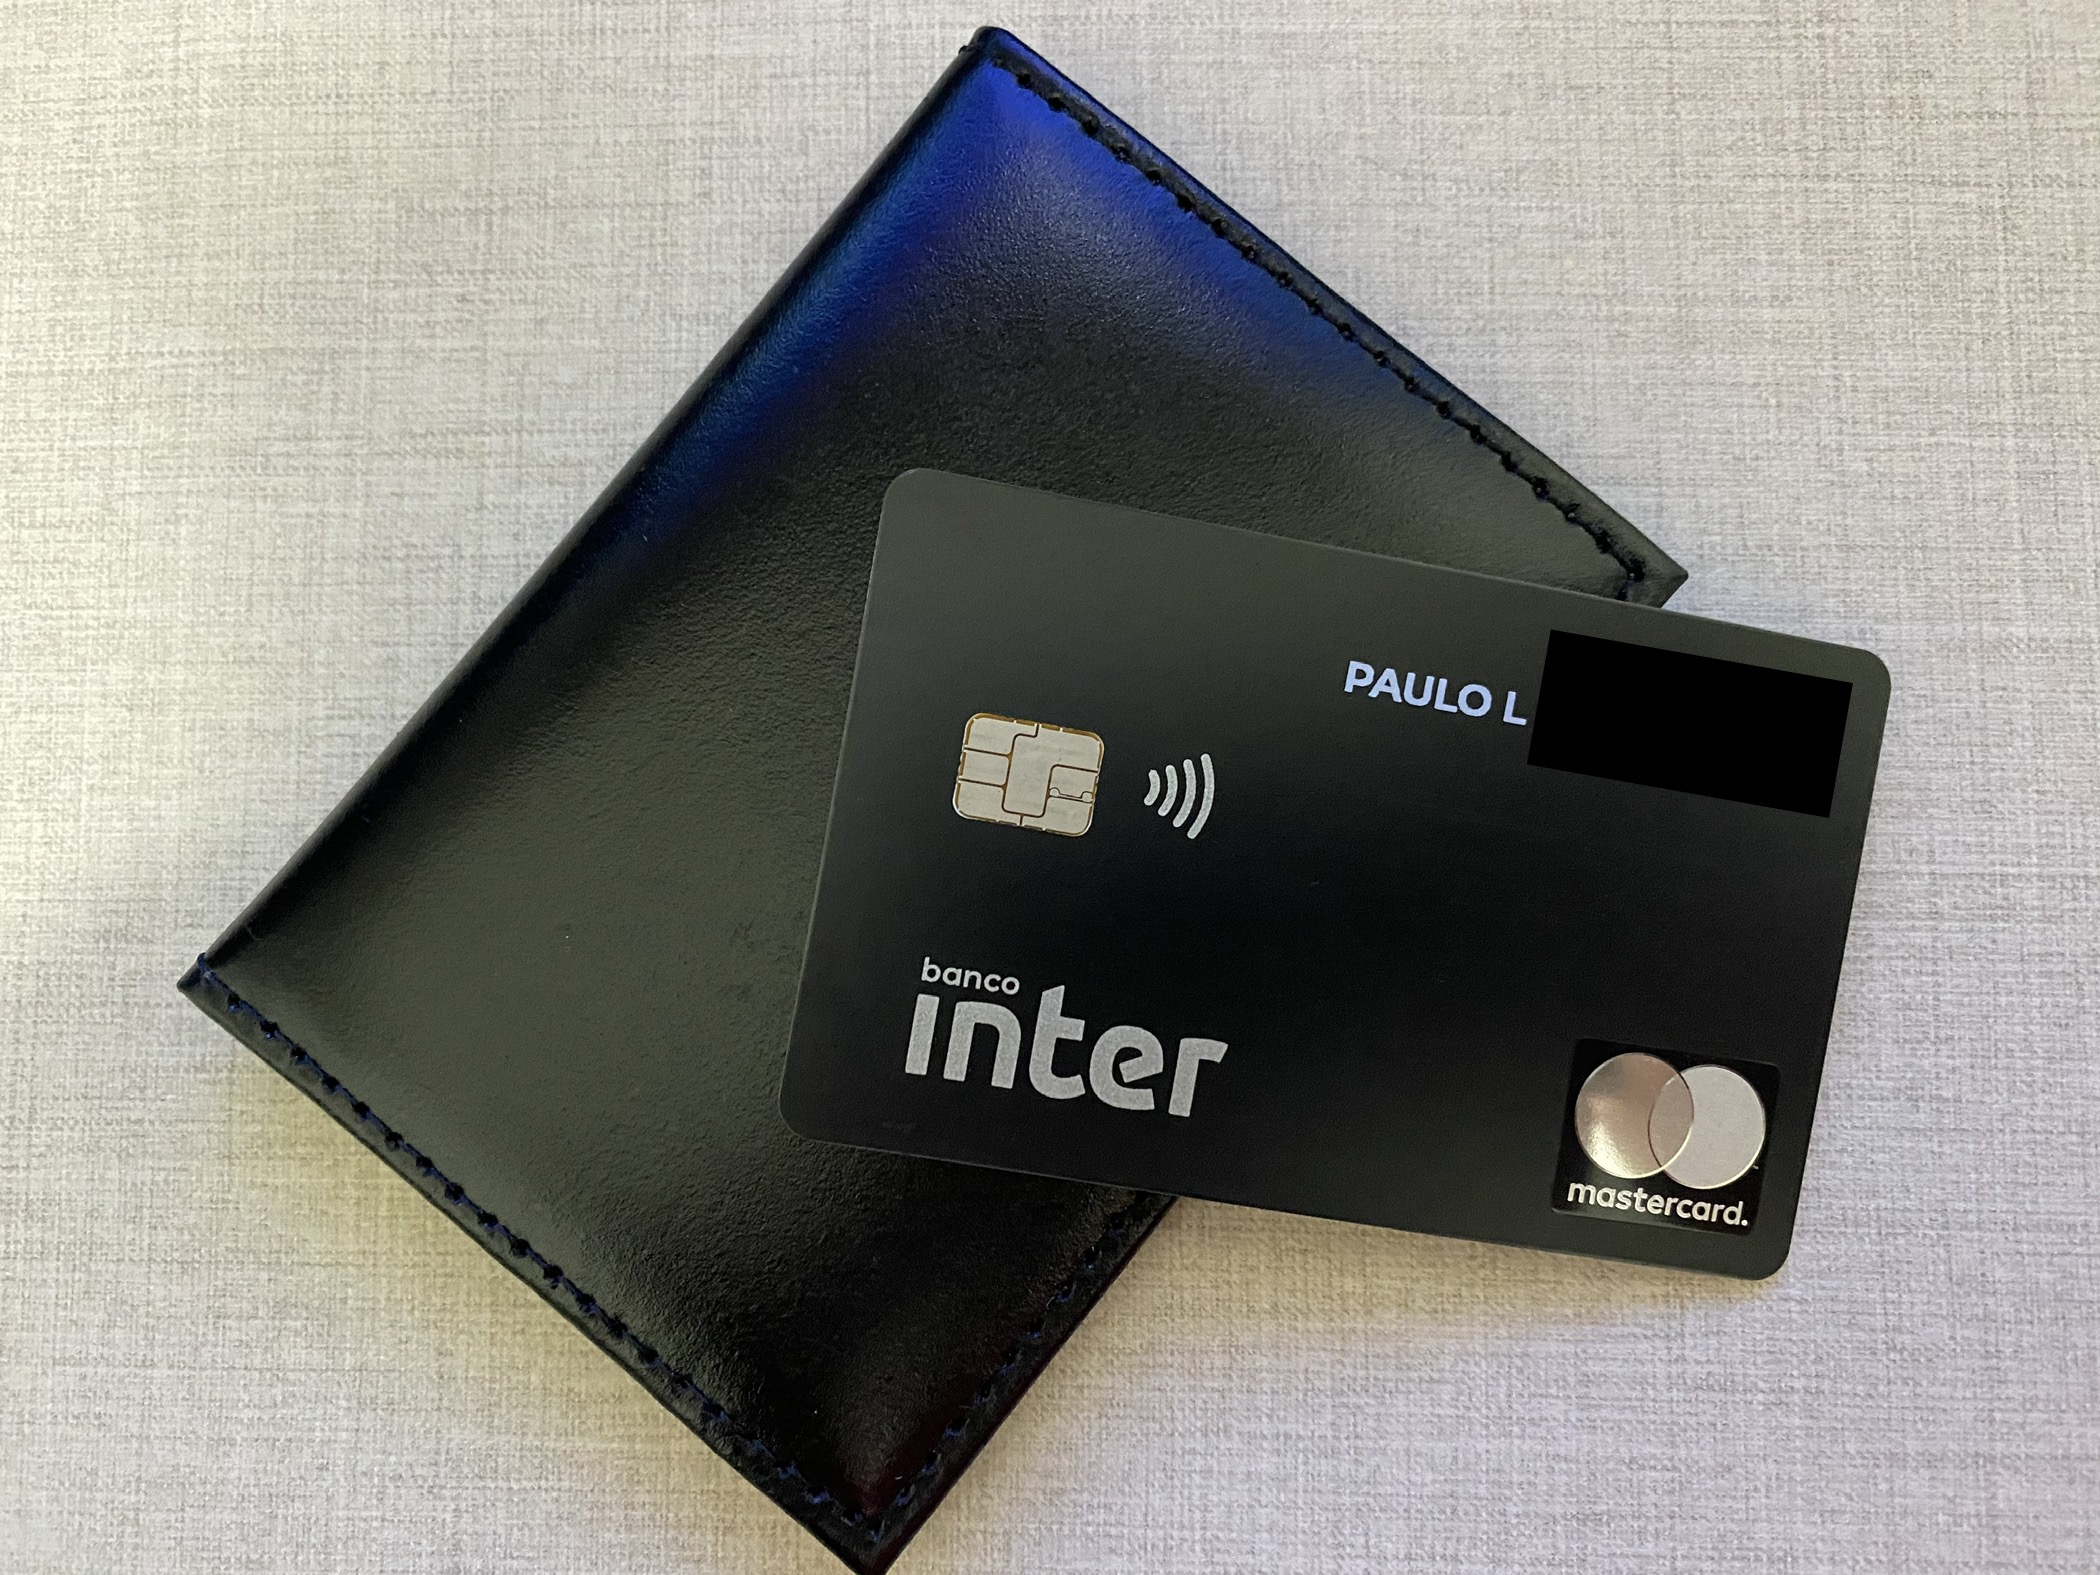 Banco Inter irá cancelar o cartão Mastercard Black de quem retirar os investimentos do banco?